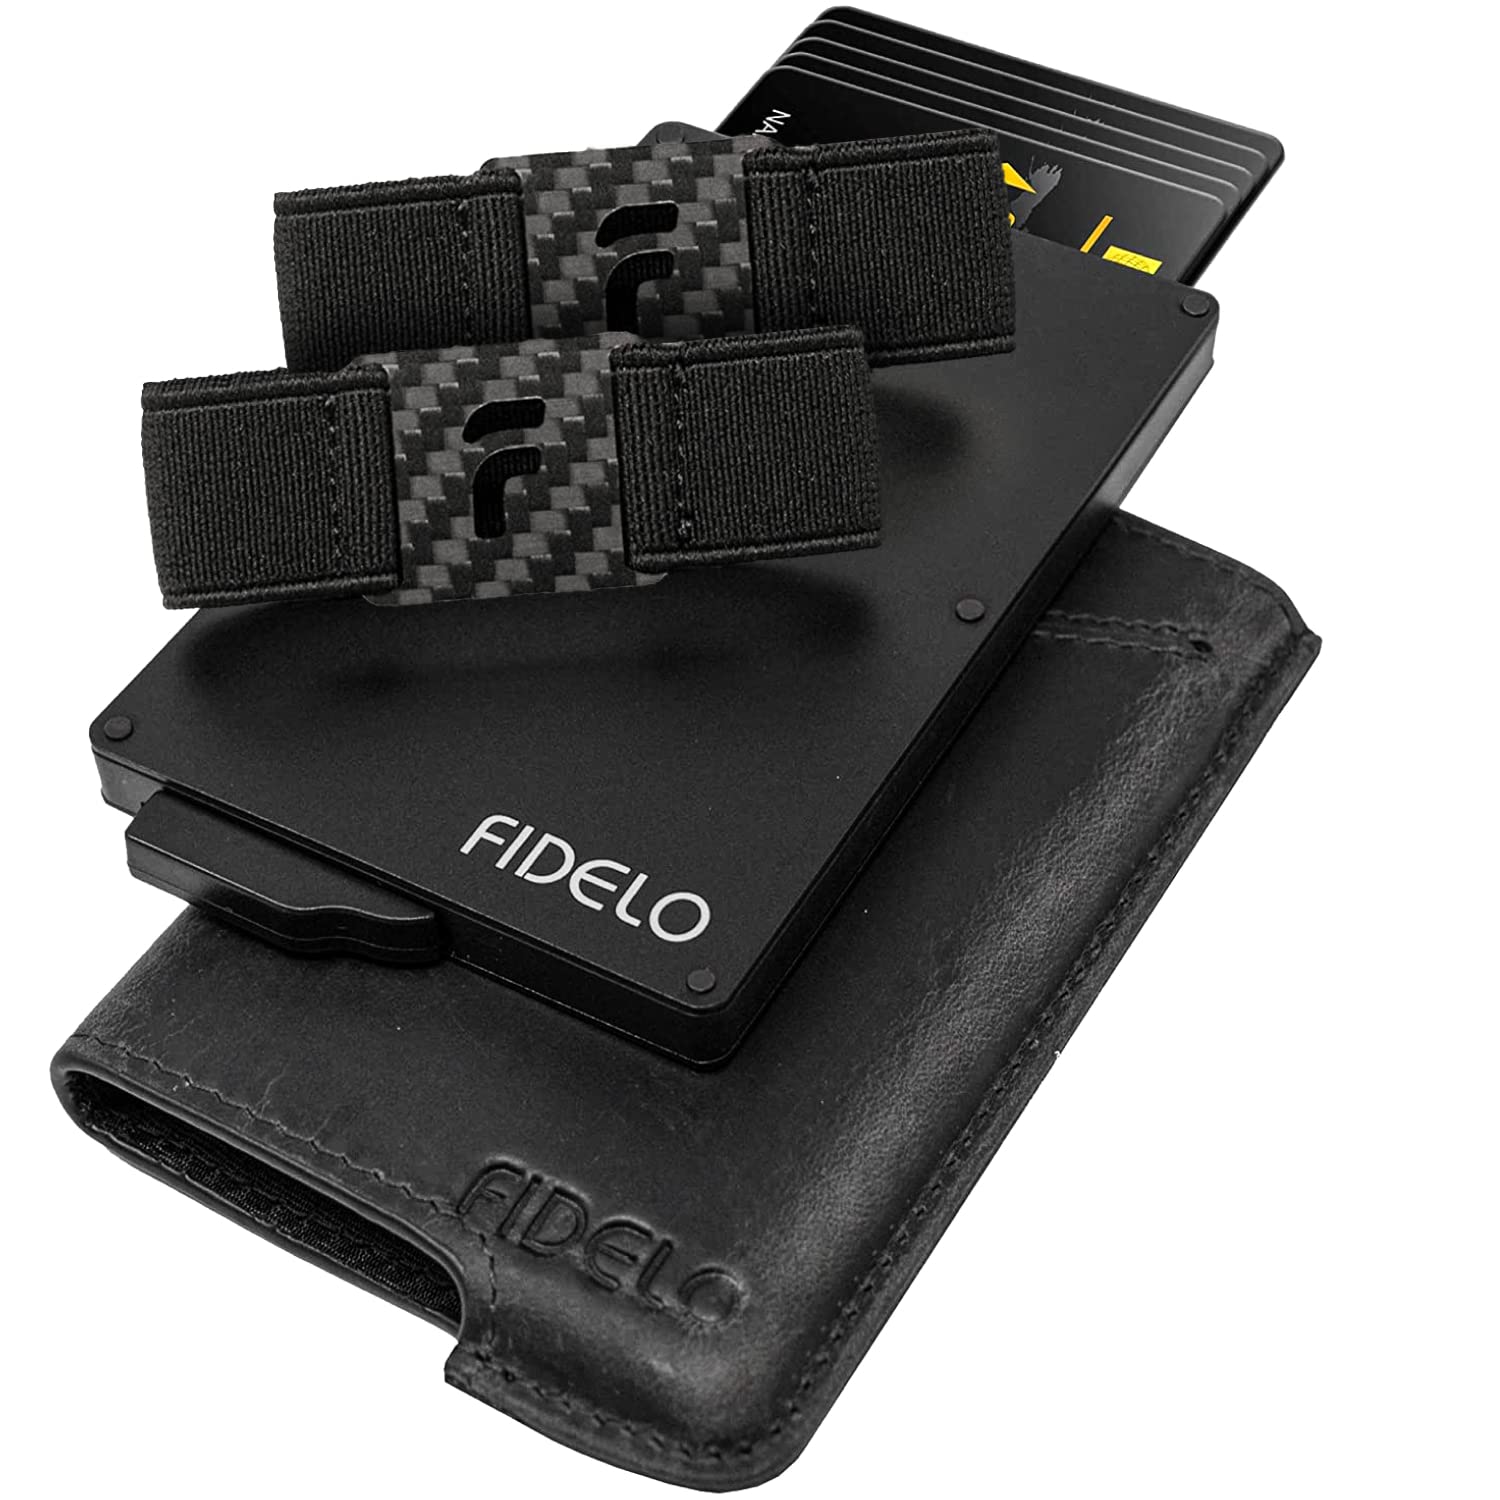 Fidelo Minimalist Wallet for Men - RFID Blocking Pop up Wallet Credit Card Holder, Slim Wallet for Men 6063 Aluminum Wallet with a Card Clip Holder with a Removable Leather Case - Vintage Black